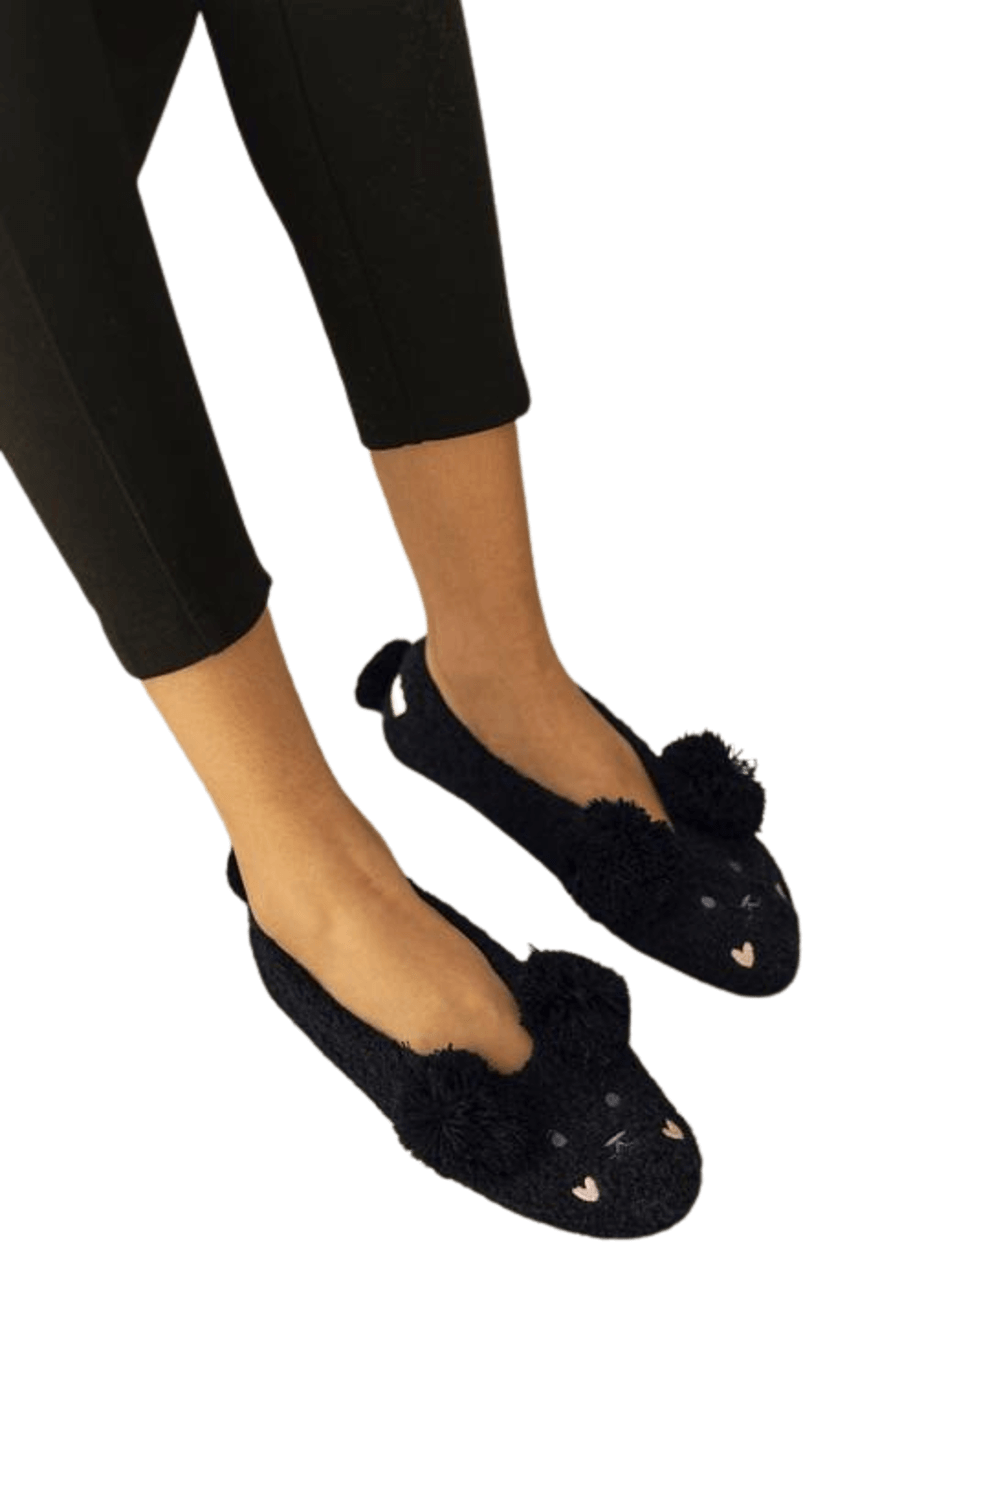 Bear Slipper Socks - LATTELOVE Co.